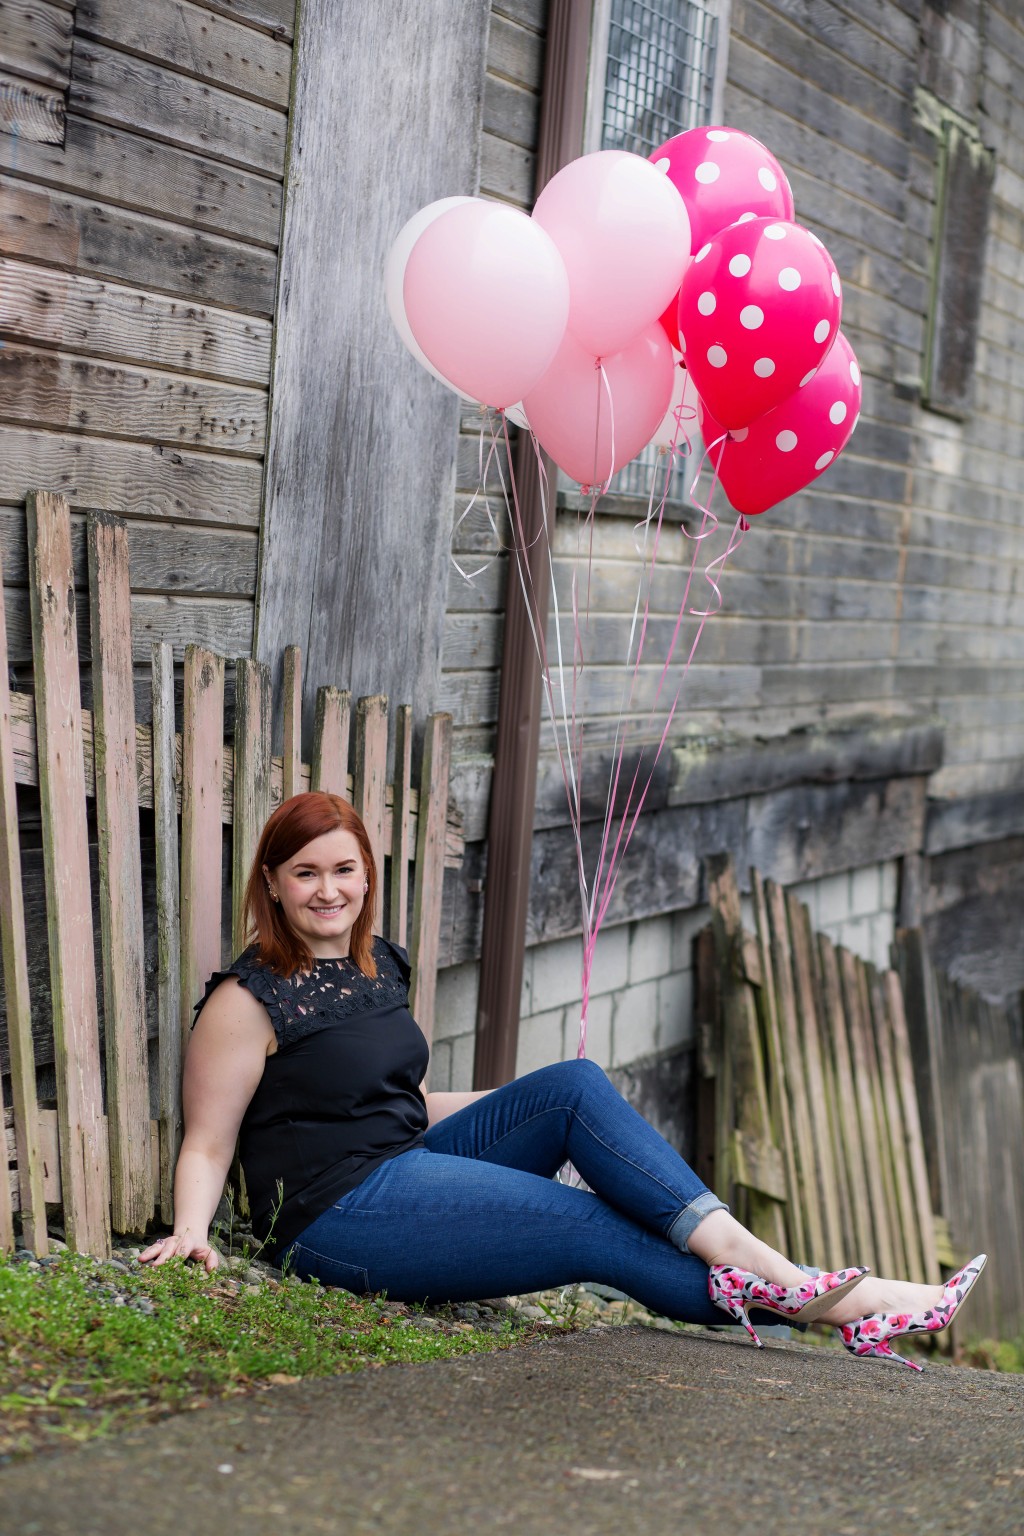 6 - balloon photoshoot for birthday